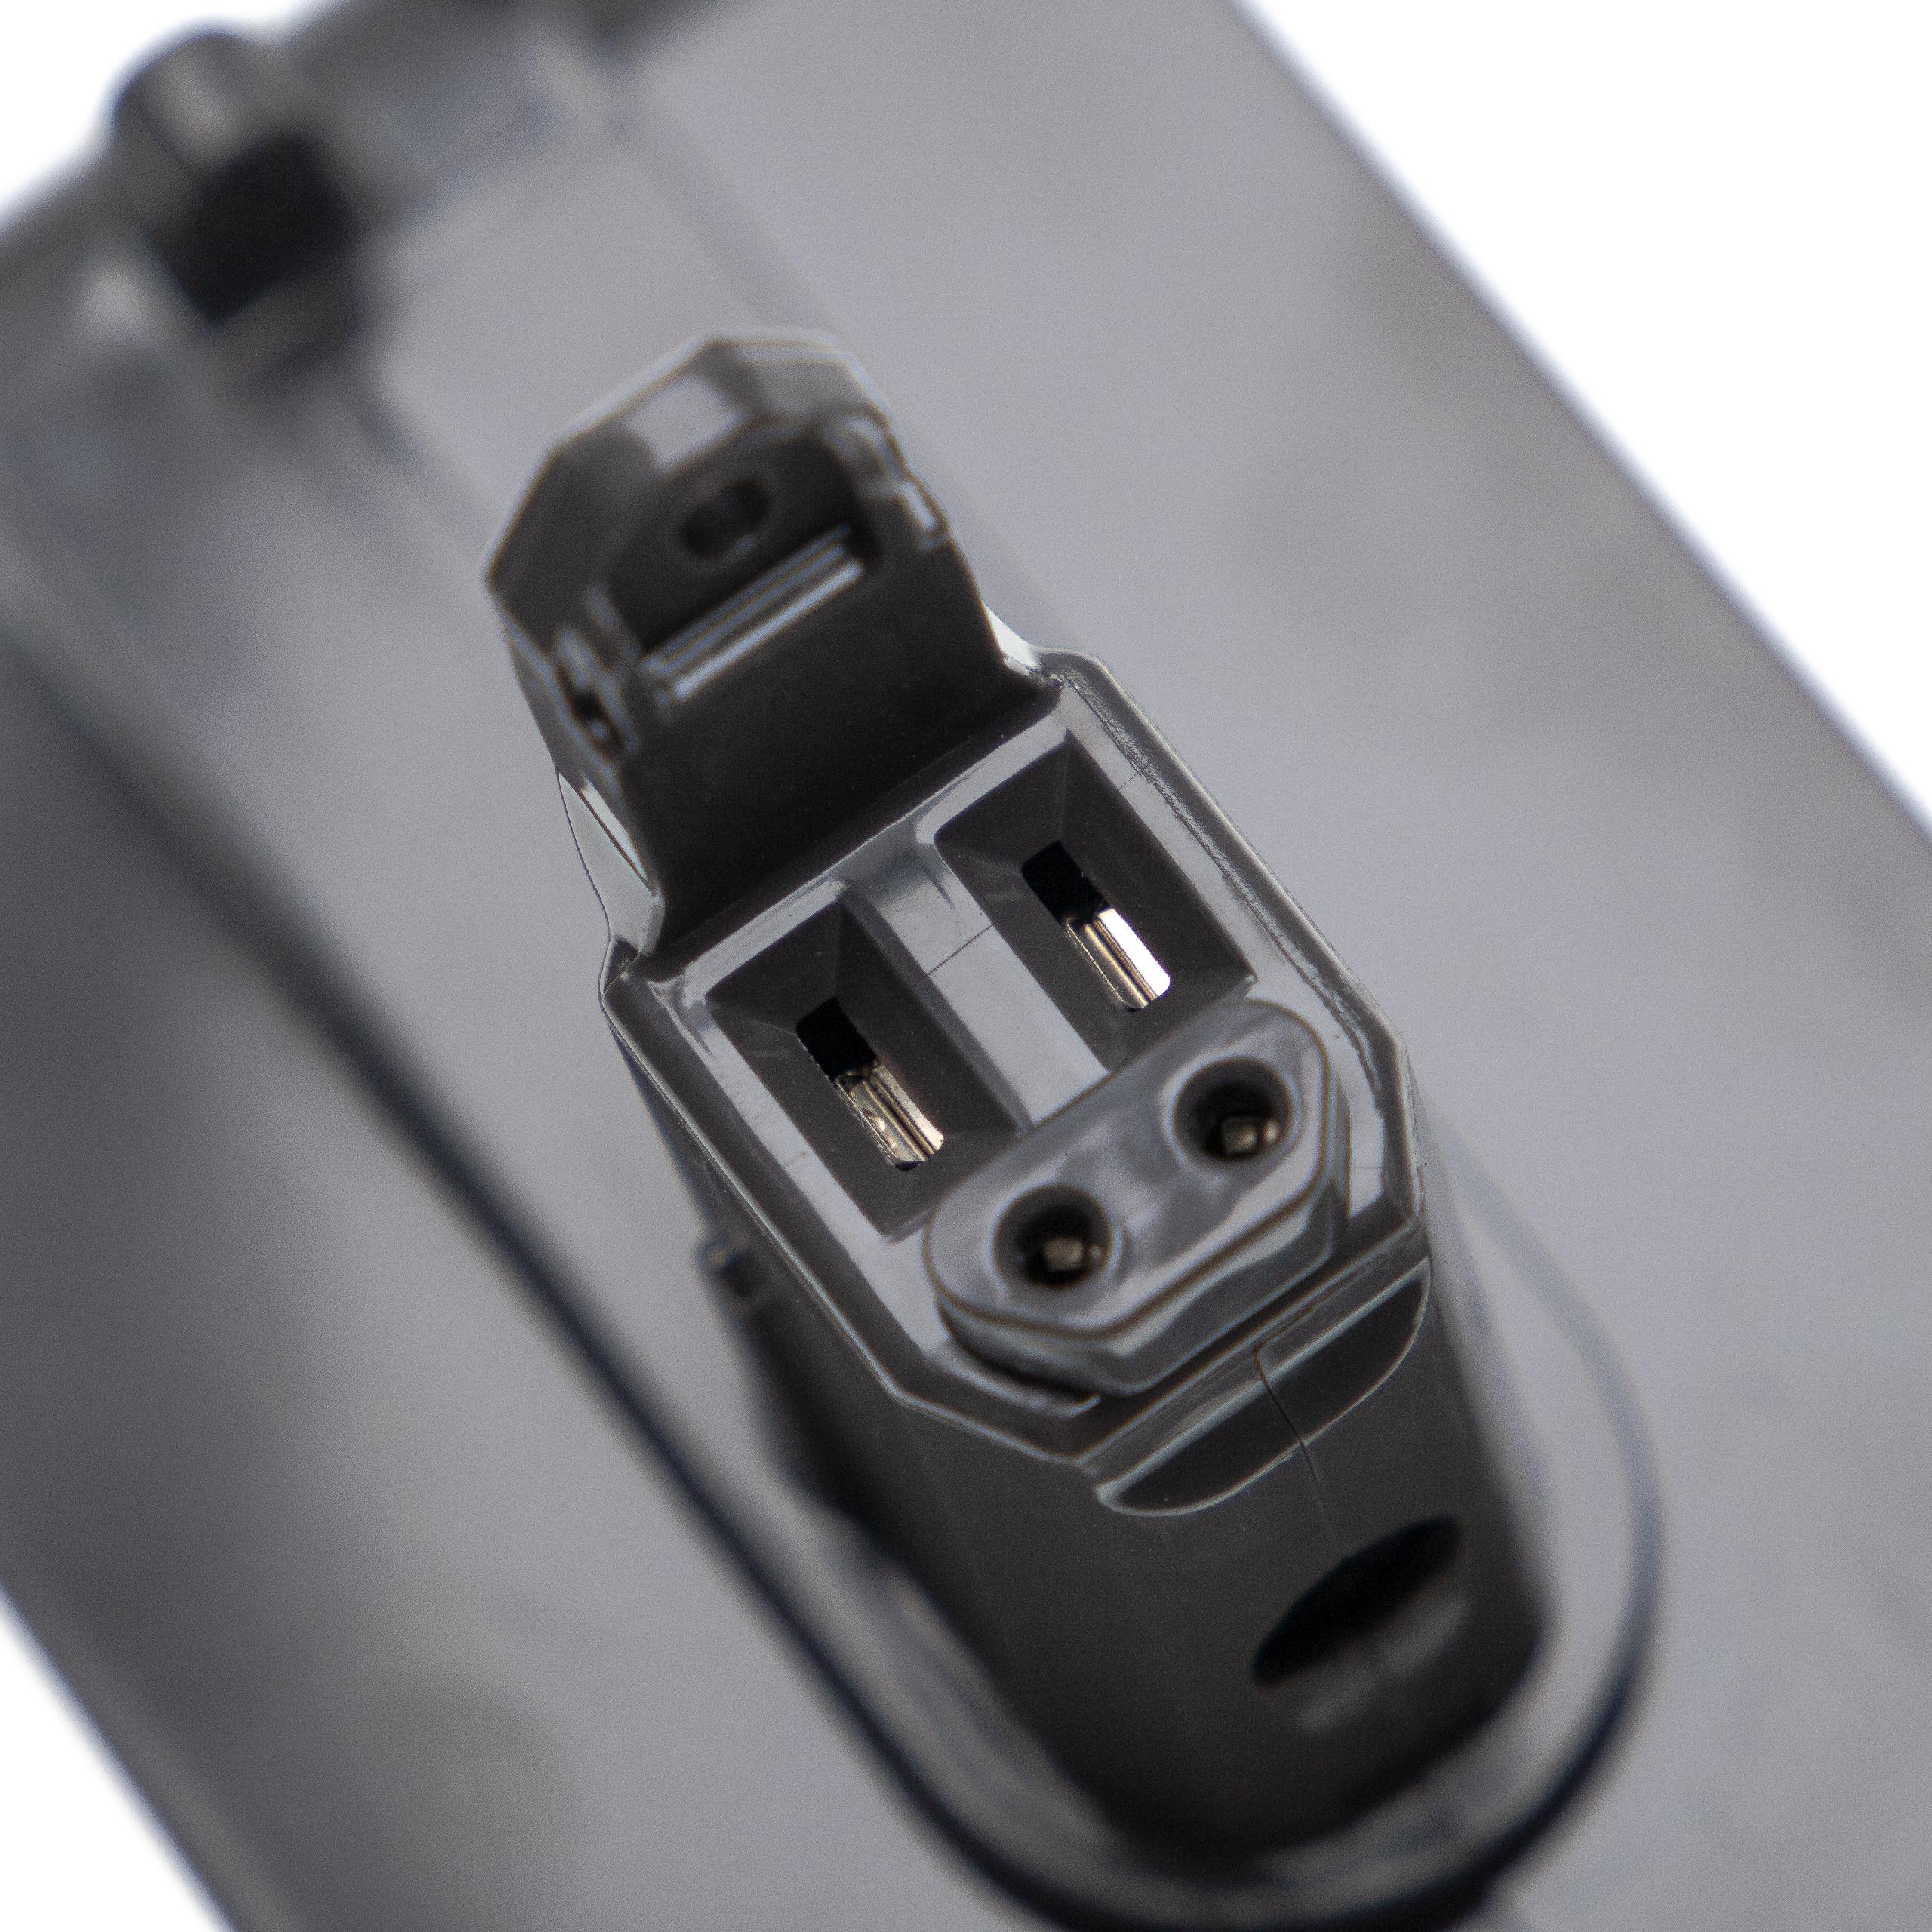 Batterie remplace Dyson 17083-5010, 17083-3009, 17083-3511 pour aspirateur - 2000mAh 22,2V Li-ion, gris